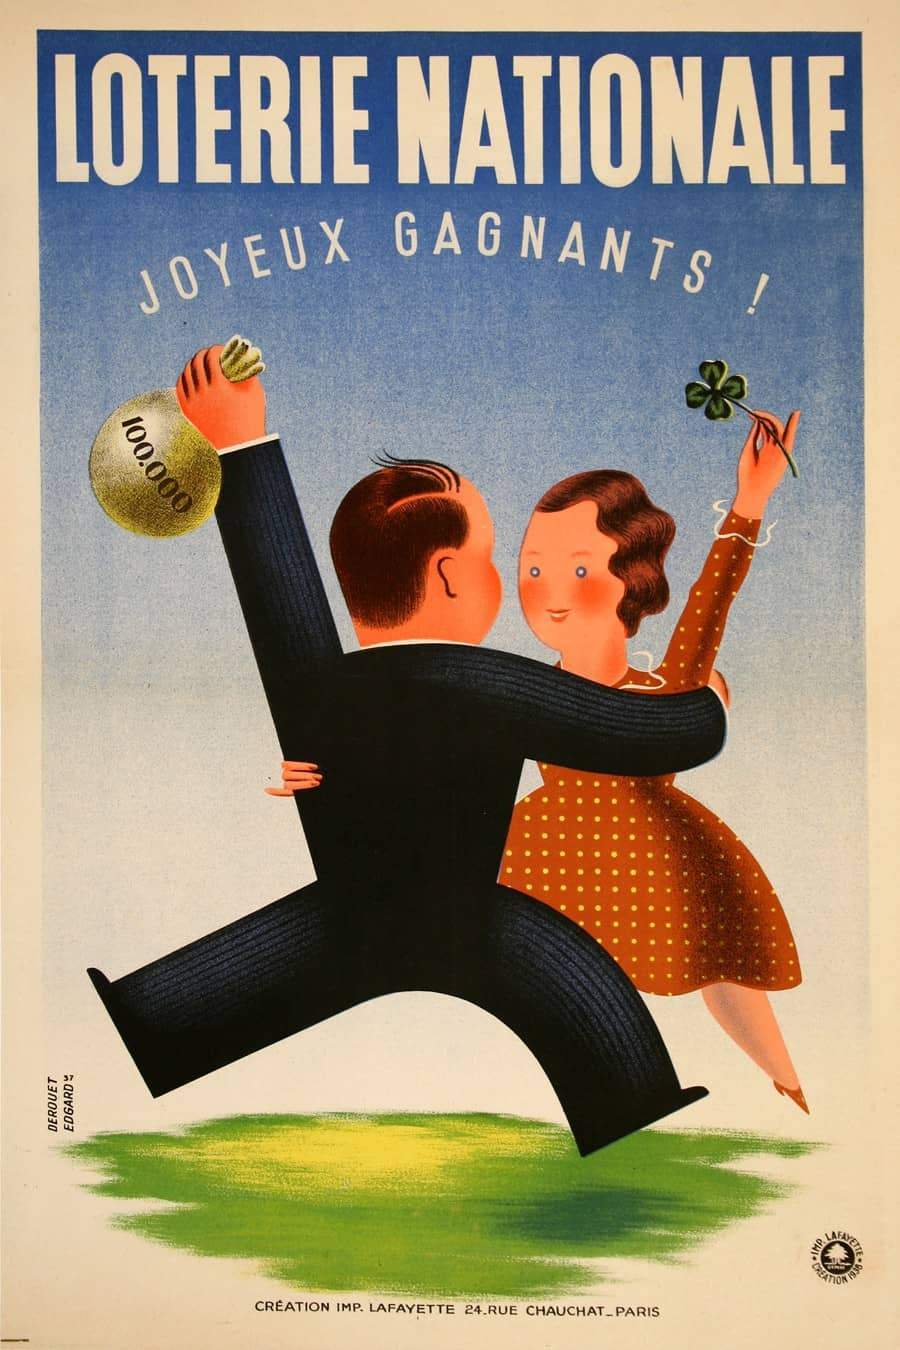 Derouet Lesacg Original French Loterie Poster 1938 - Joyeux Gagnants Couple Dancing